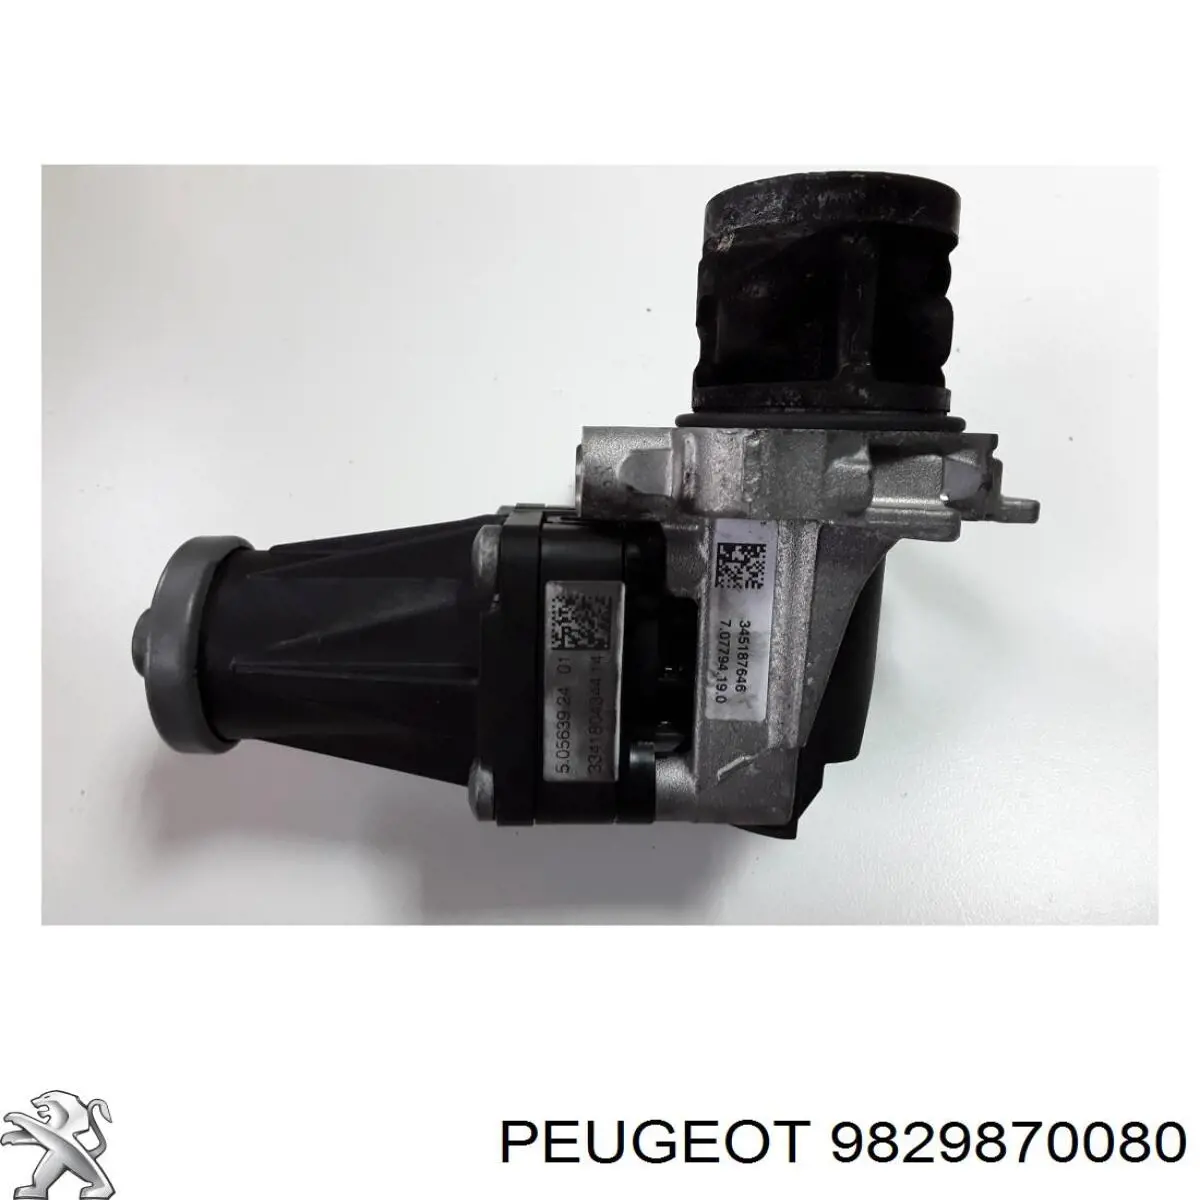 9813064280 Peugeot/Citroen egr